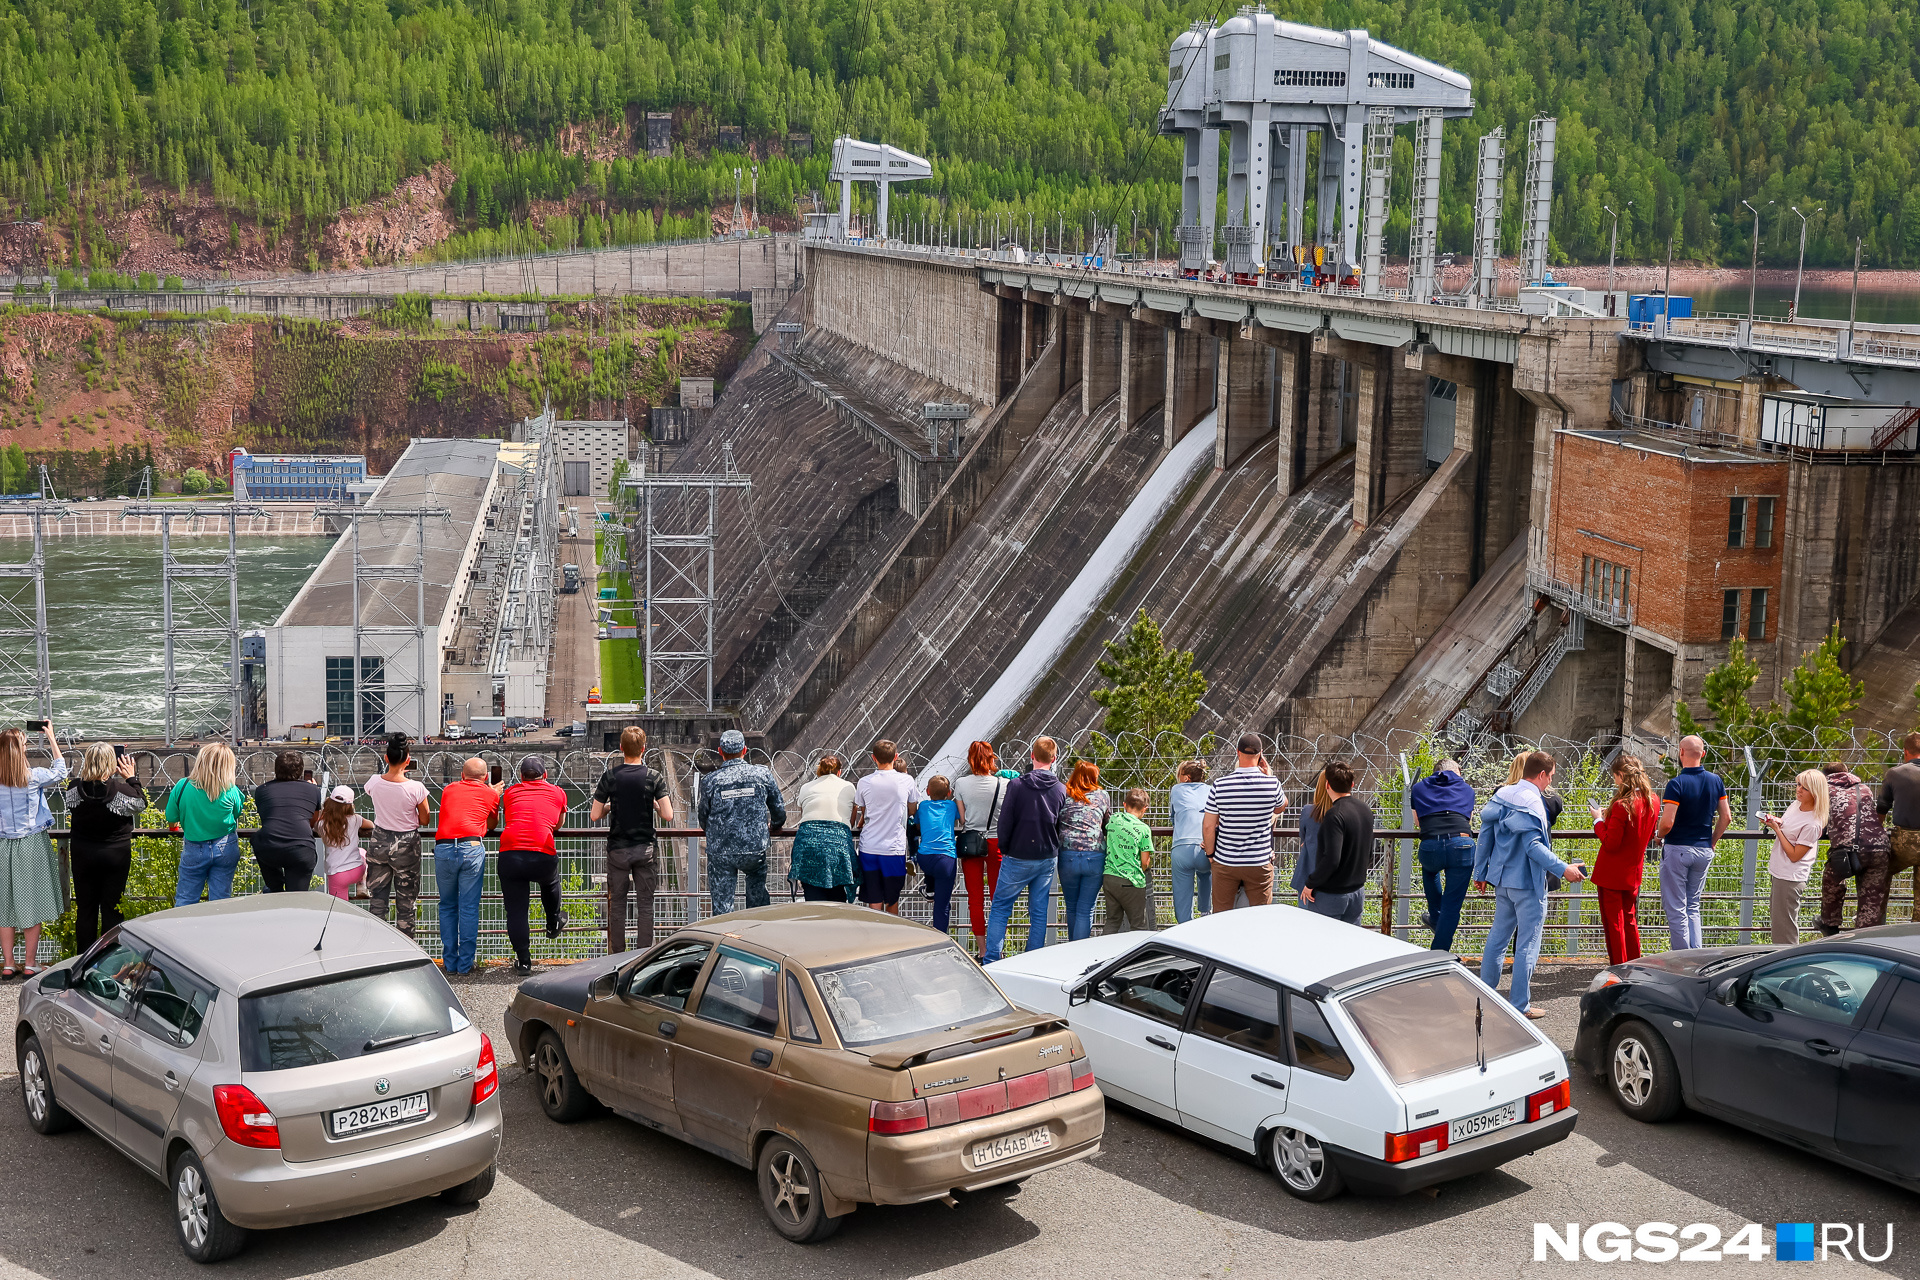 Желающие продолжают приезжать к ГЭС, чтобы полюбоваться редким зрелищем